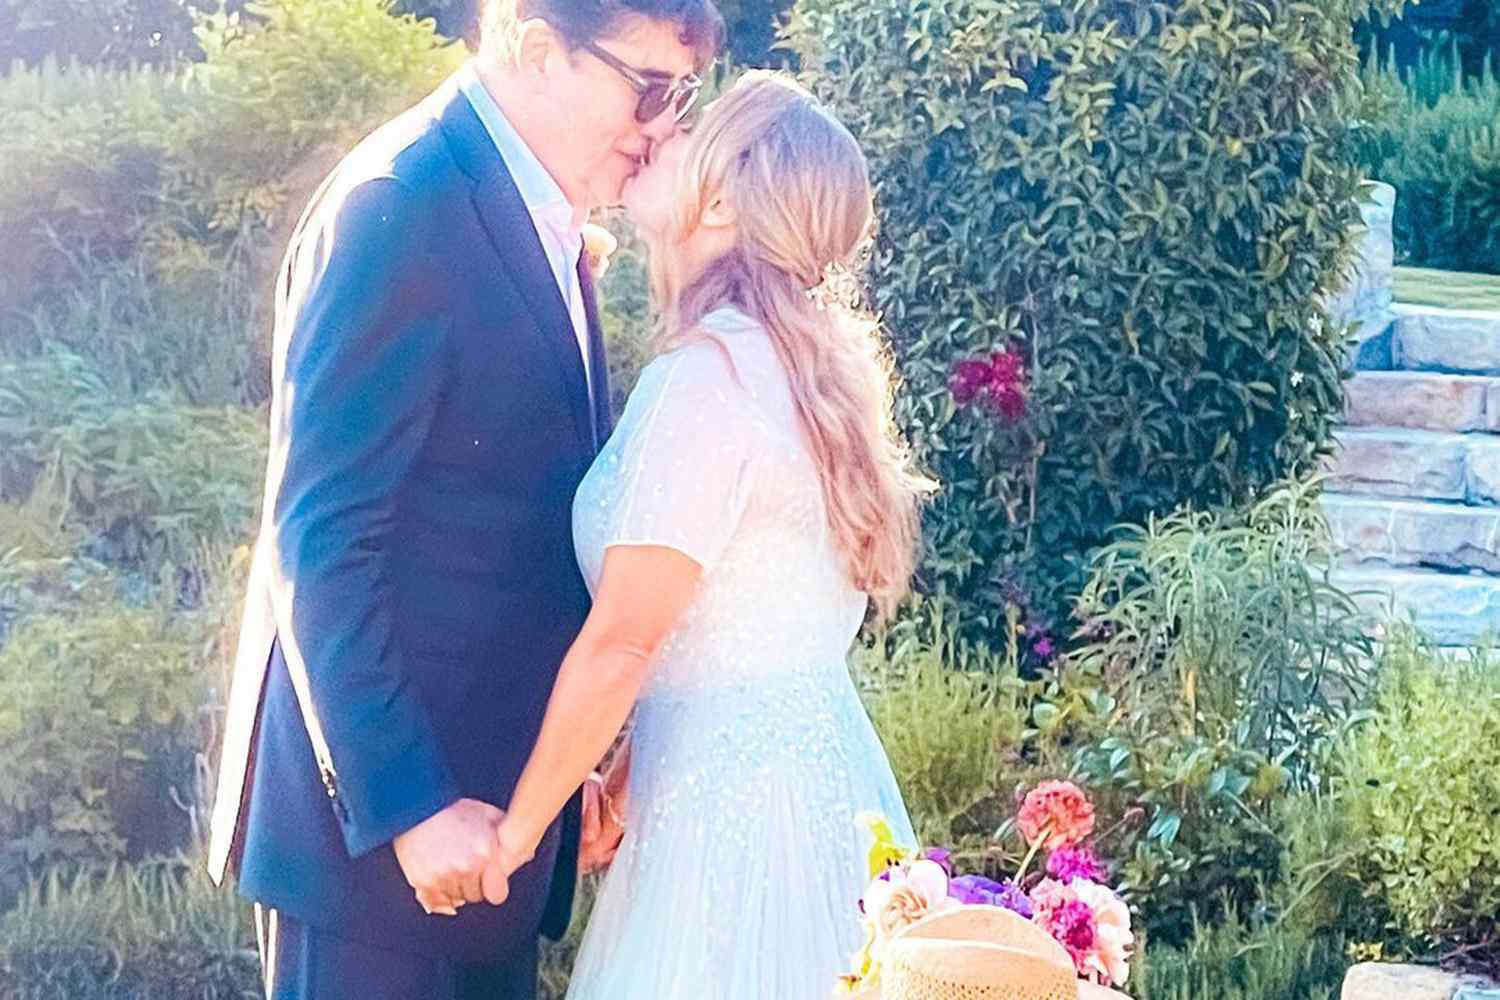 Alfred Molina Casa-se com a Diretora do Frozen Jennifer Lee em Casamento no Jardim Romântico: 'We Do'